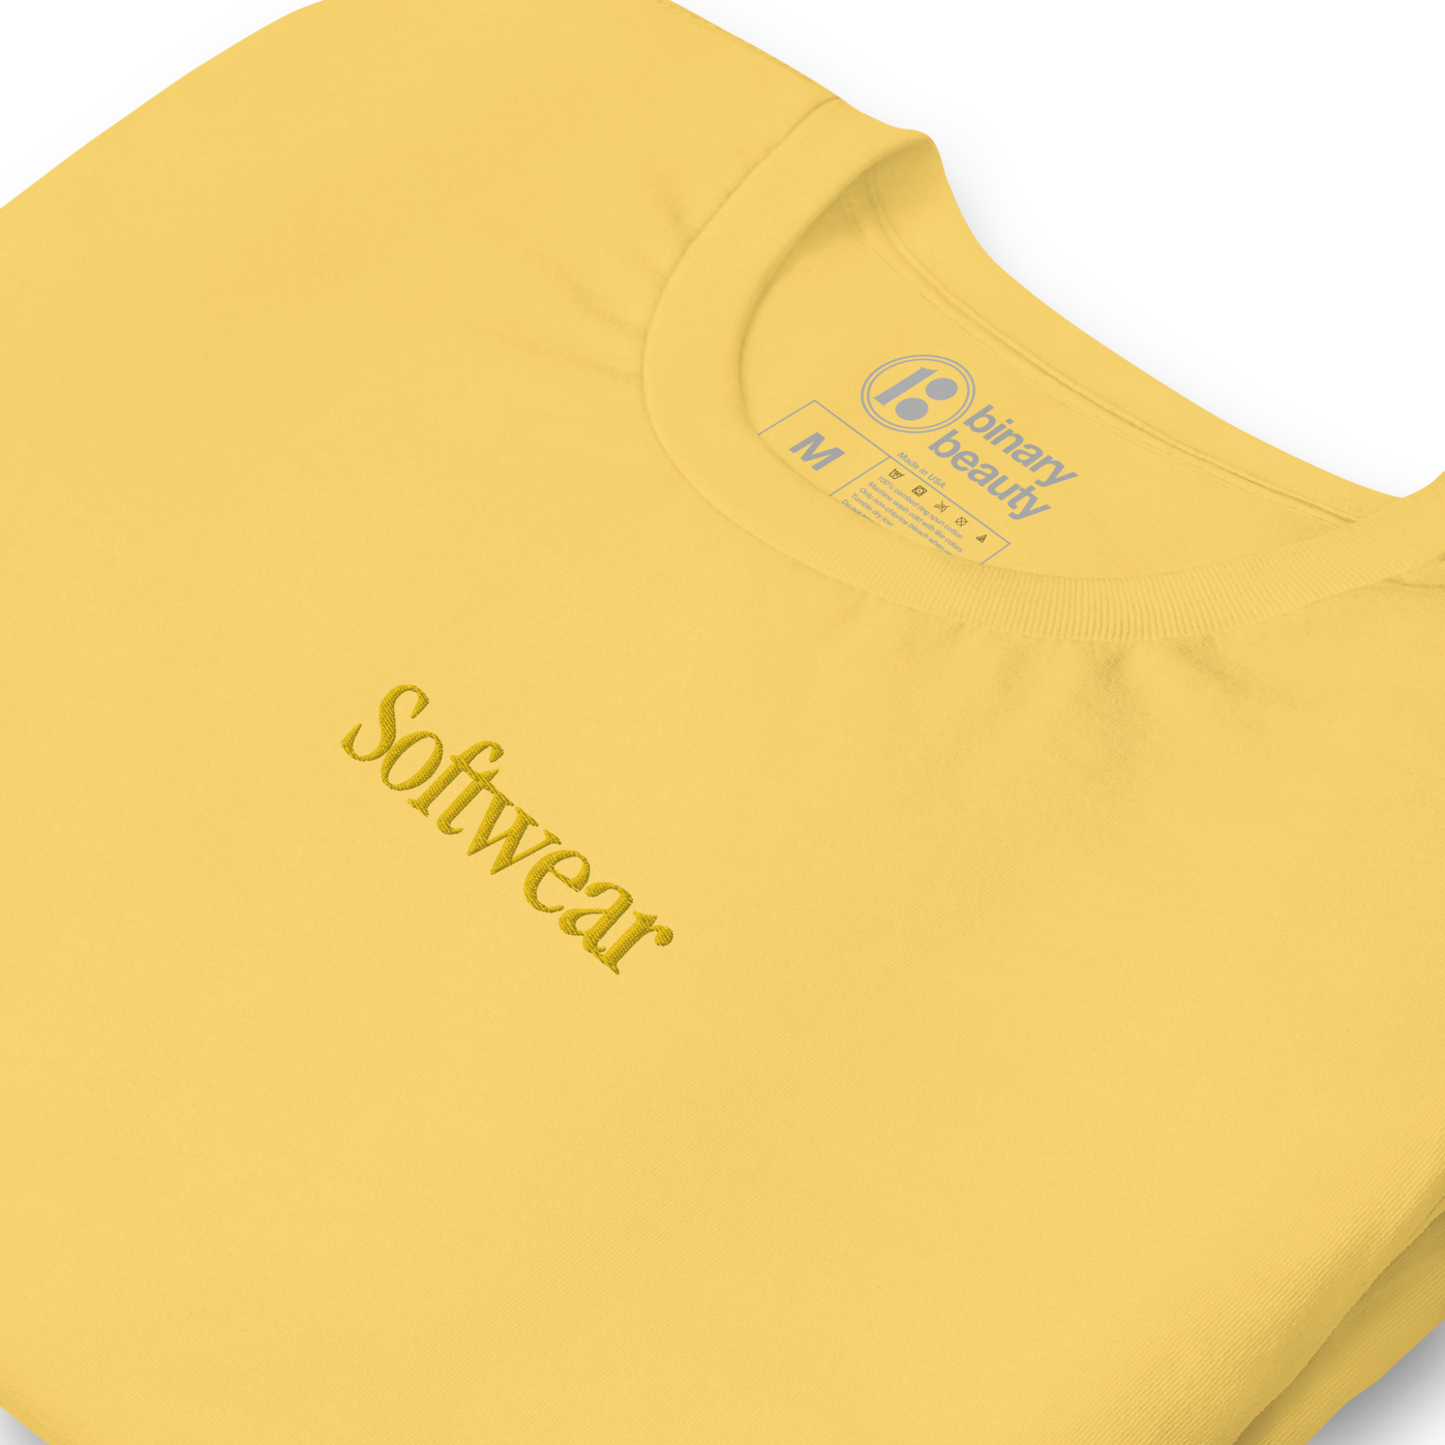 iCandy Softwear Shirt in Lemon